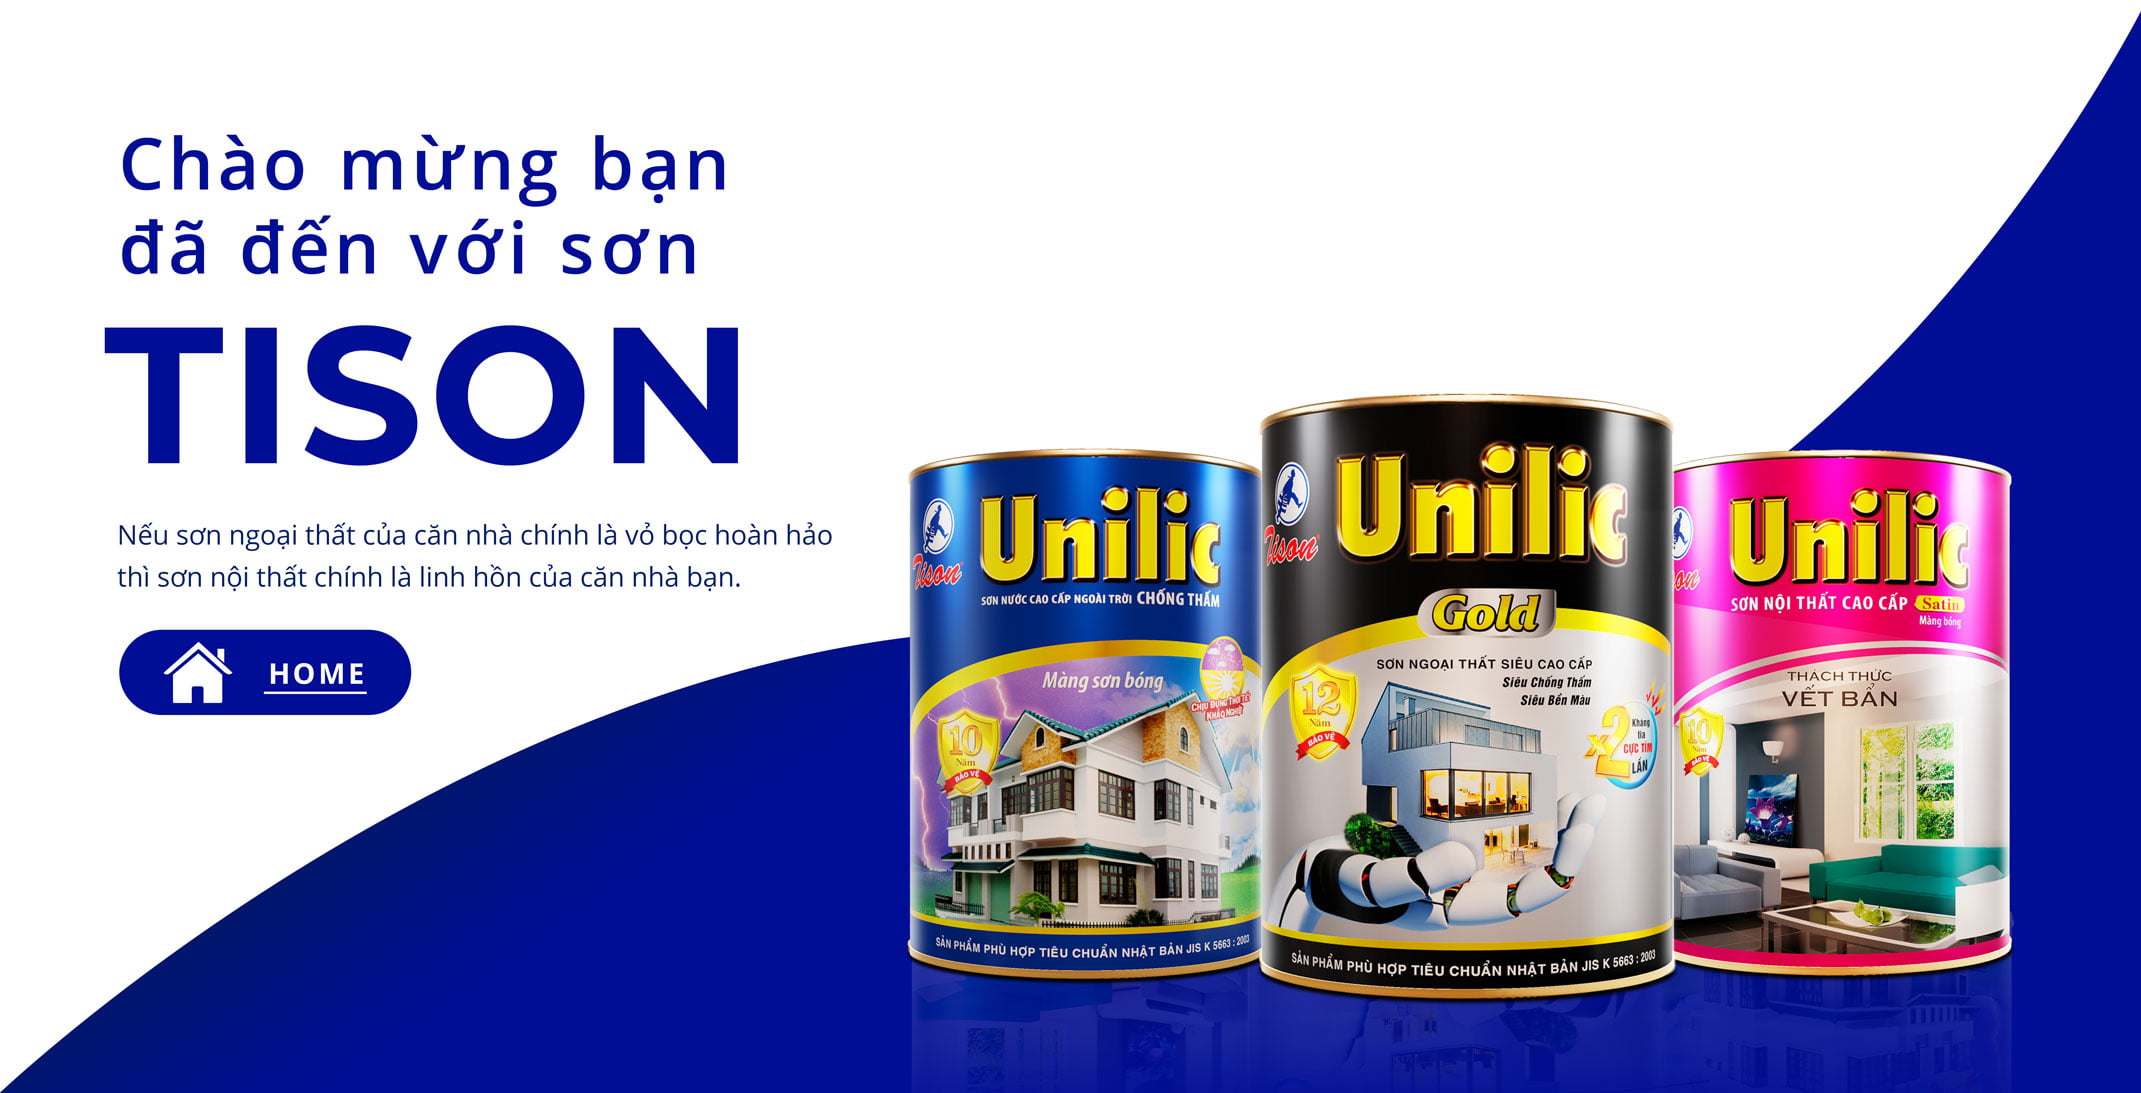 Niềm tin:
Với Sơn Unilic, chúng tôi cam kết mang đến cho bạn sản phẩm tốt nhất, chất lượng nhất và đáng tin cậy nhất. Niềm tin của khách hàng là động lực để chúng tôi không ngừng cải tiến và nâng cao chất lượng sản phẩm. Hãy cùng xem hình ảnh để cảm nhận niềm tin của khách hàng dành cho Sơn Unilic.